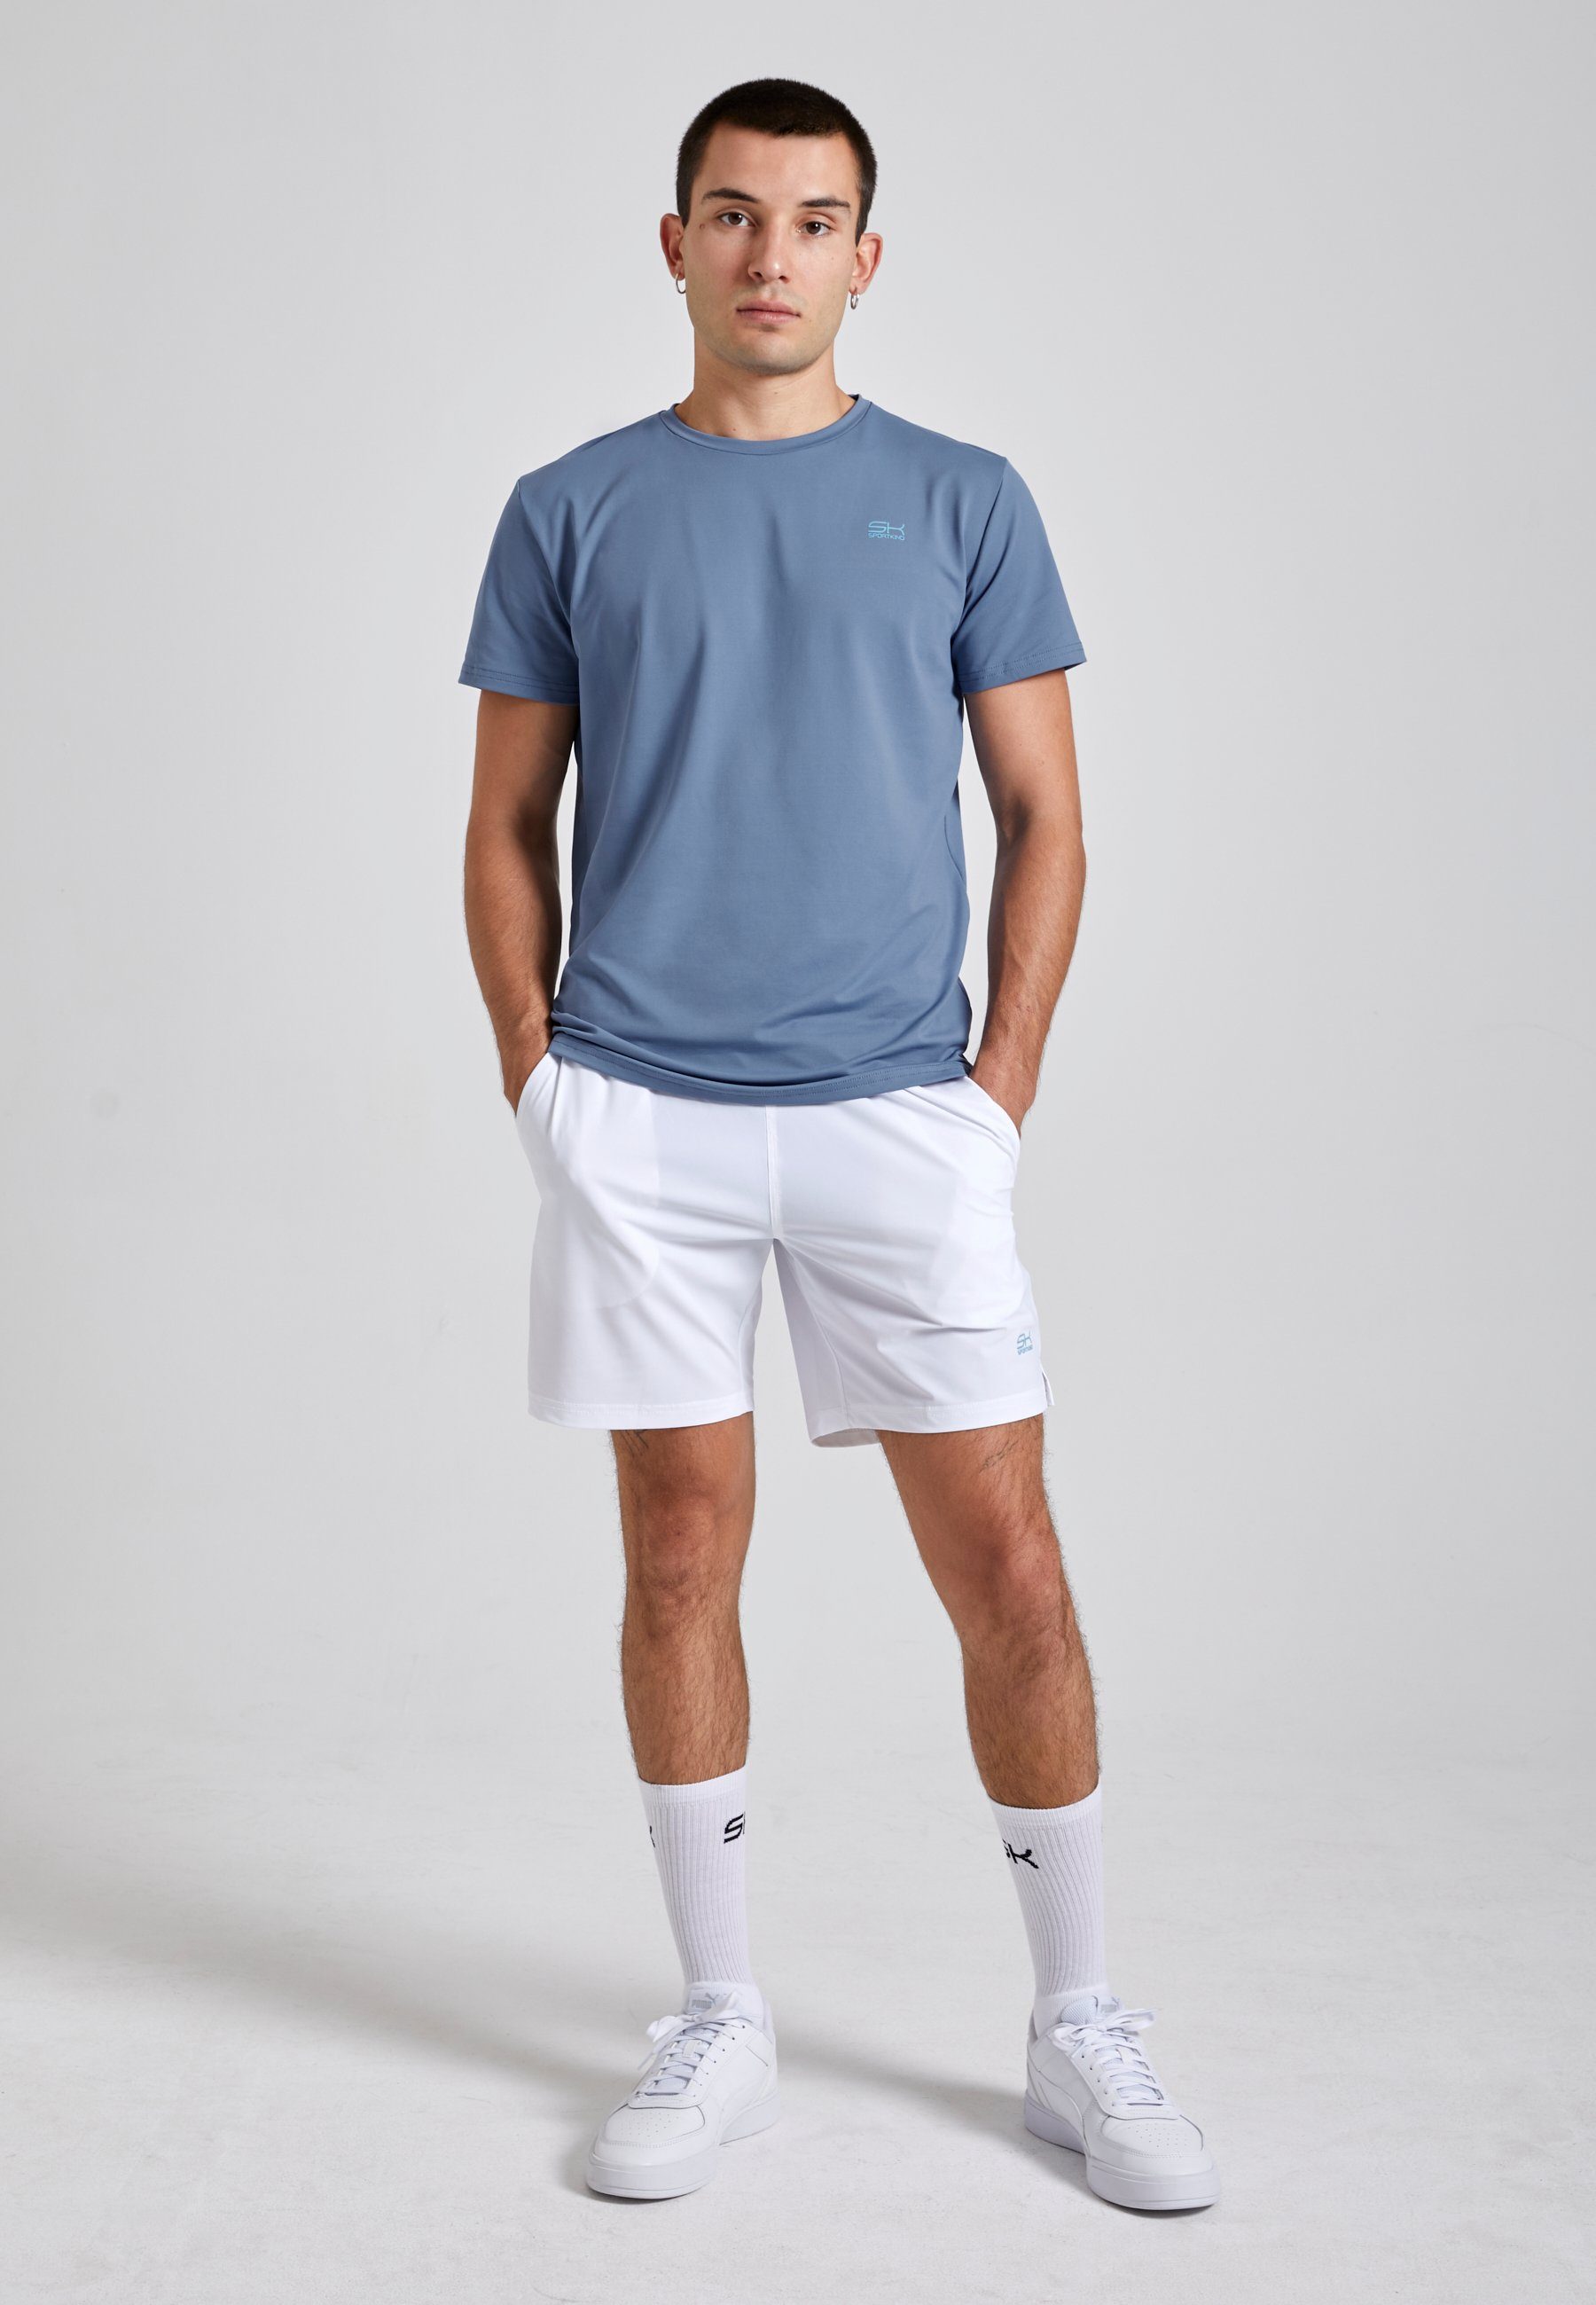 SPORTKIND Funktionsshirt Rundhals Herren & T-Shirt grau Jungen blau Tennis